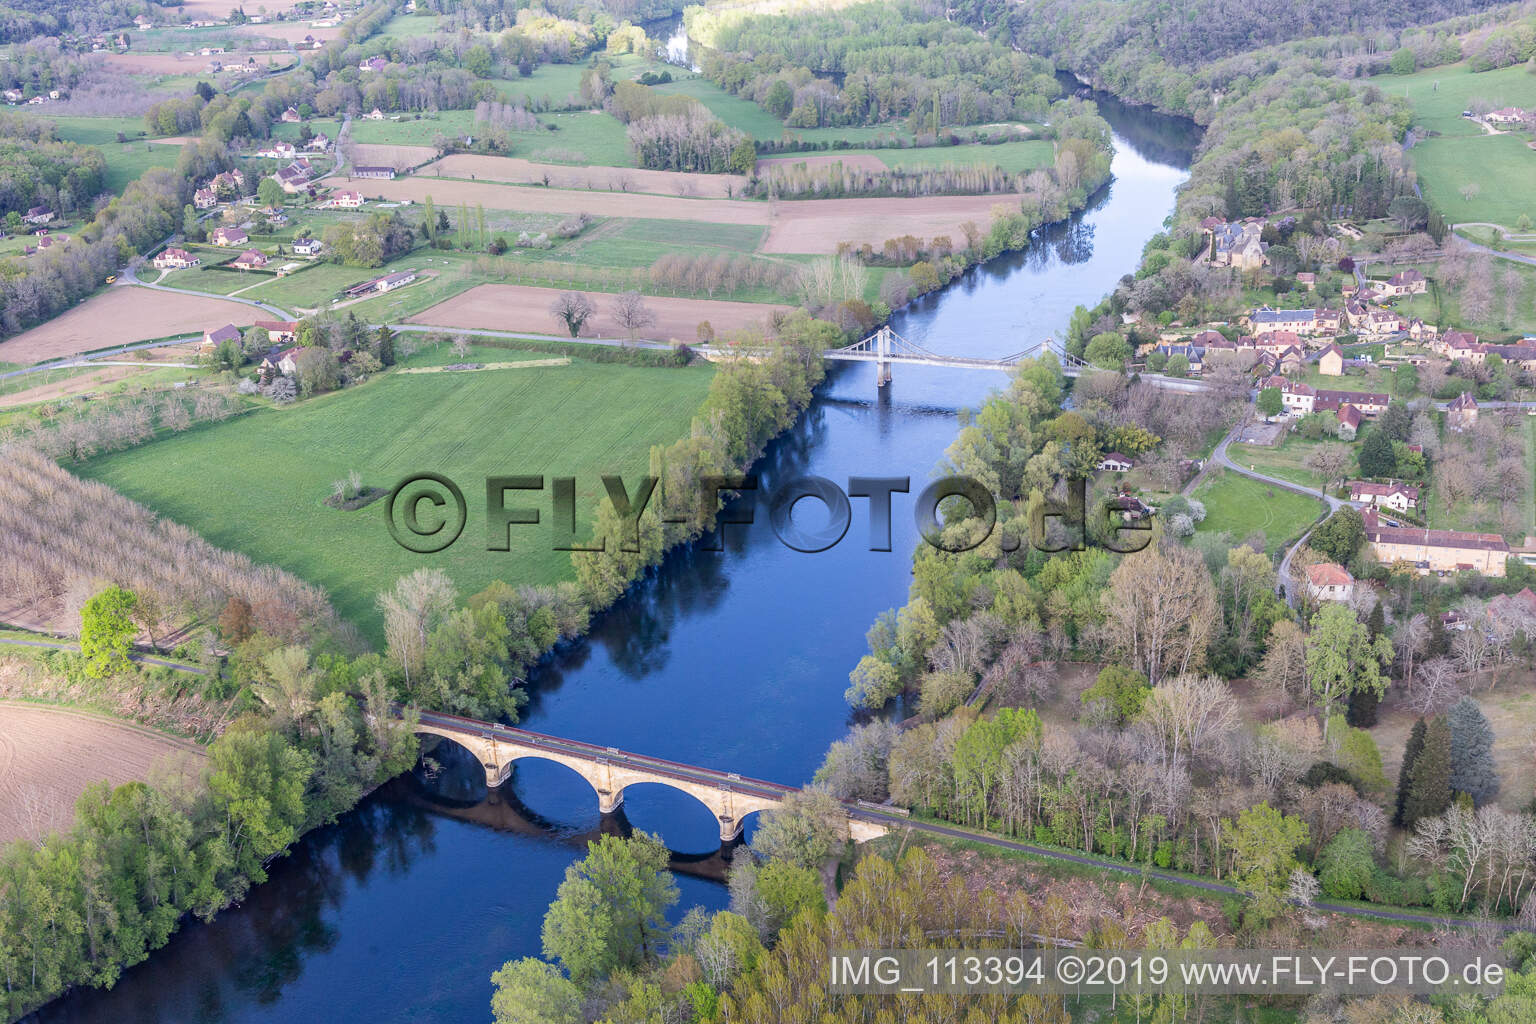 Luftbild von Dordogne in Carsac-Aillac, Frankreich